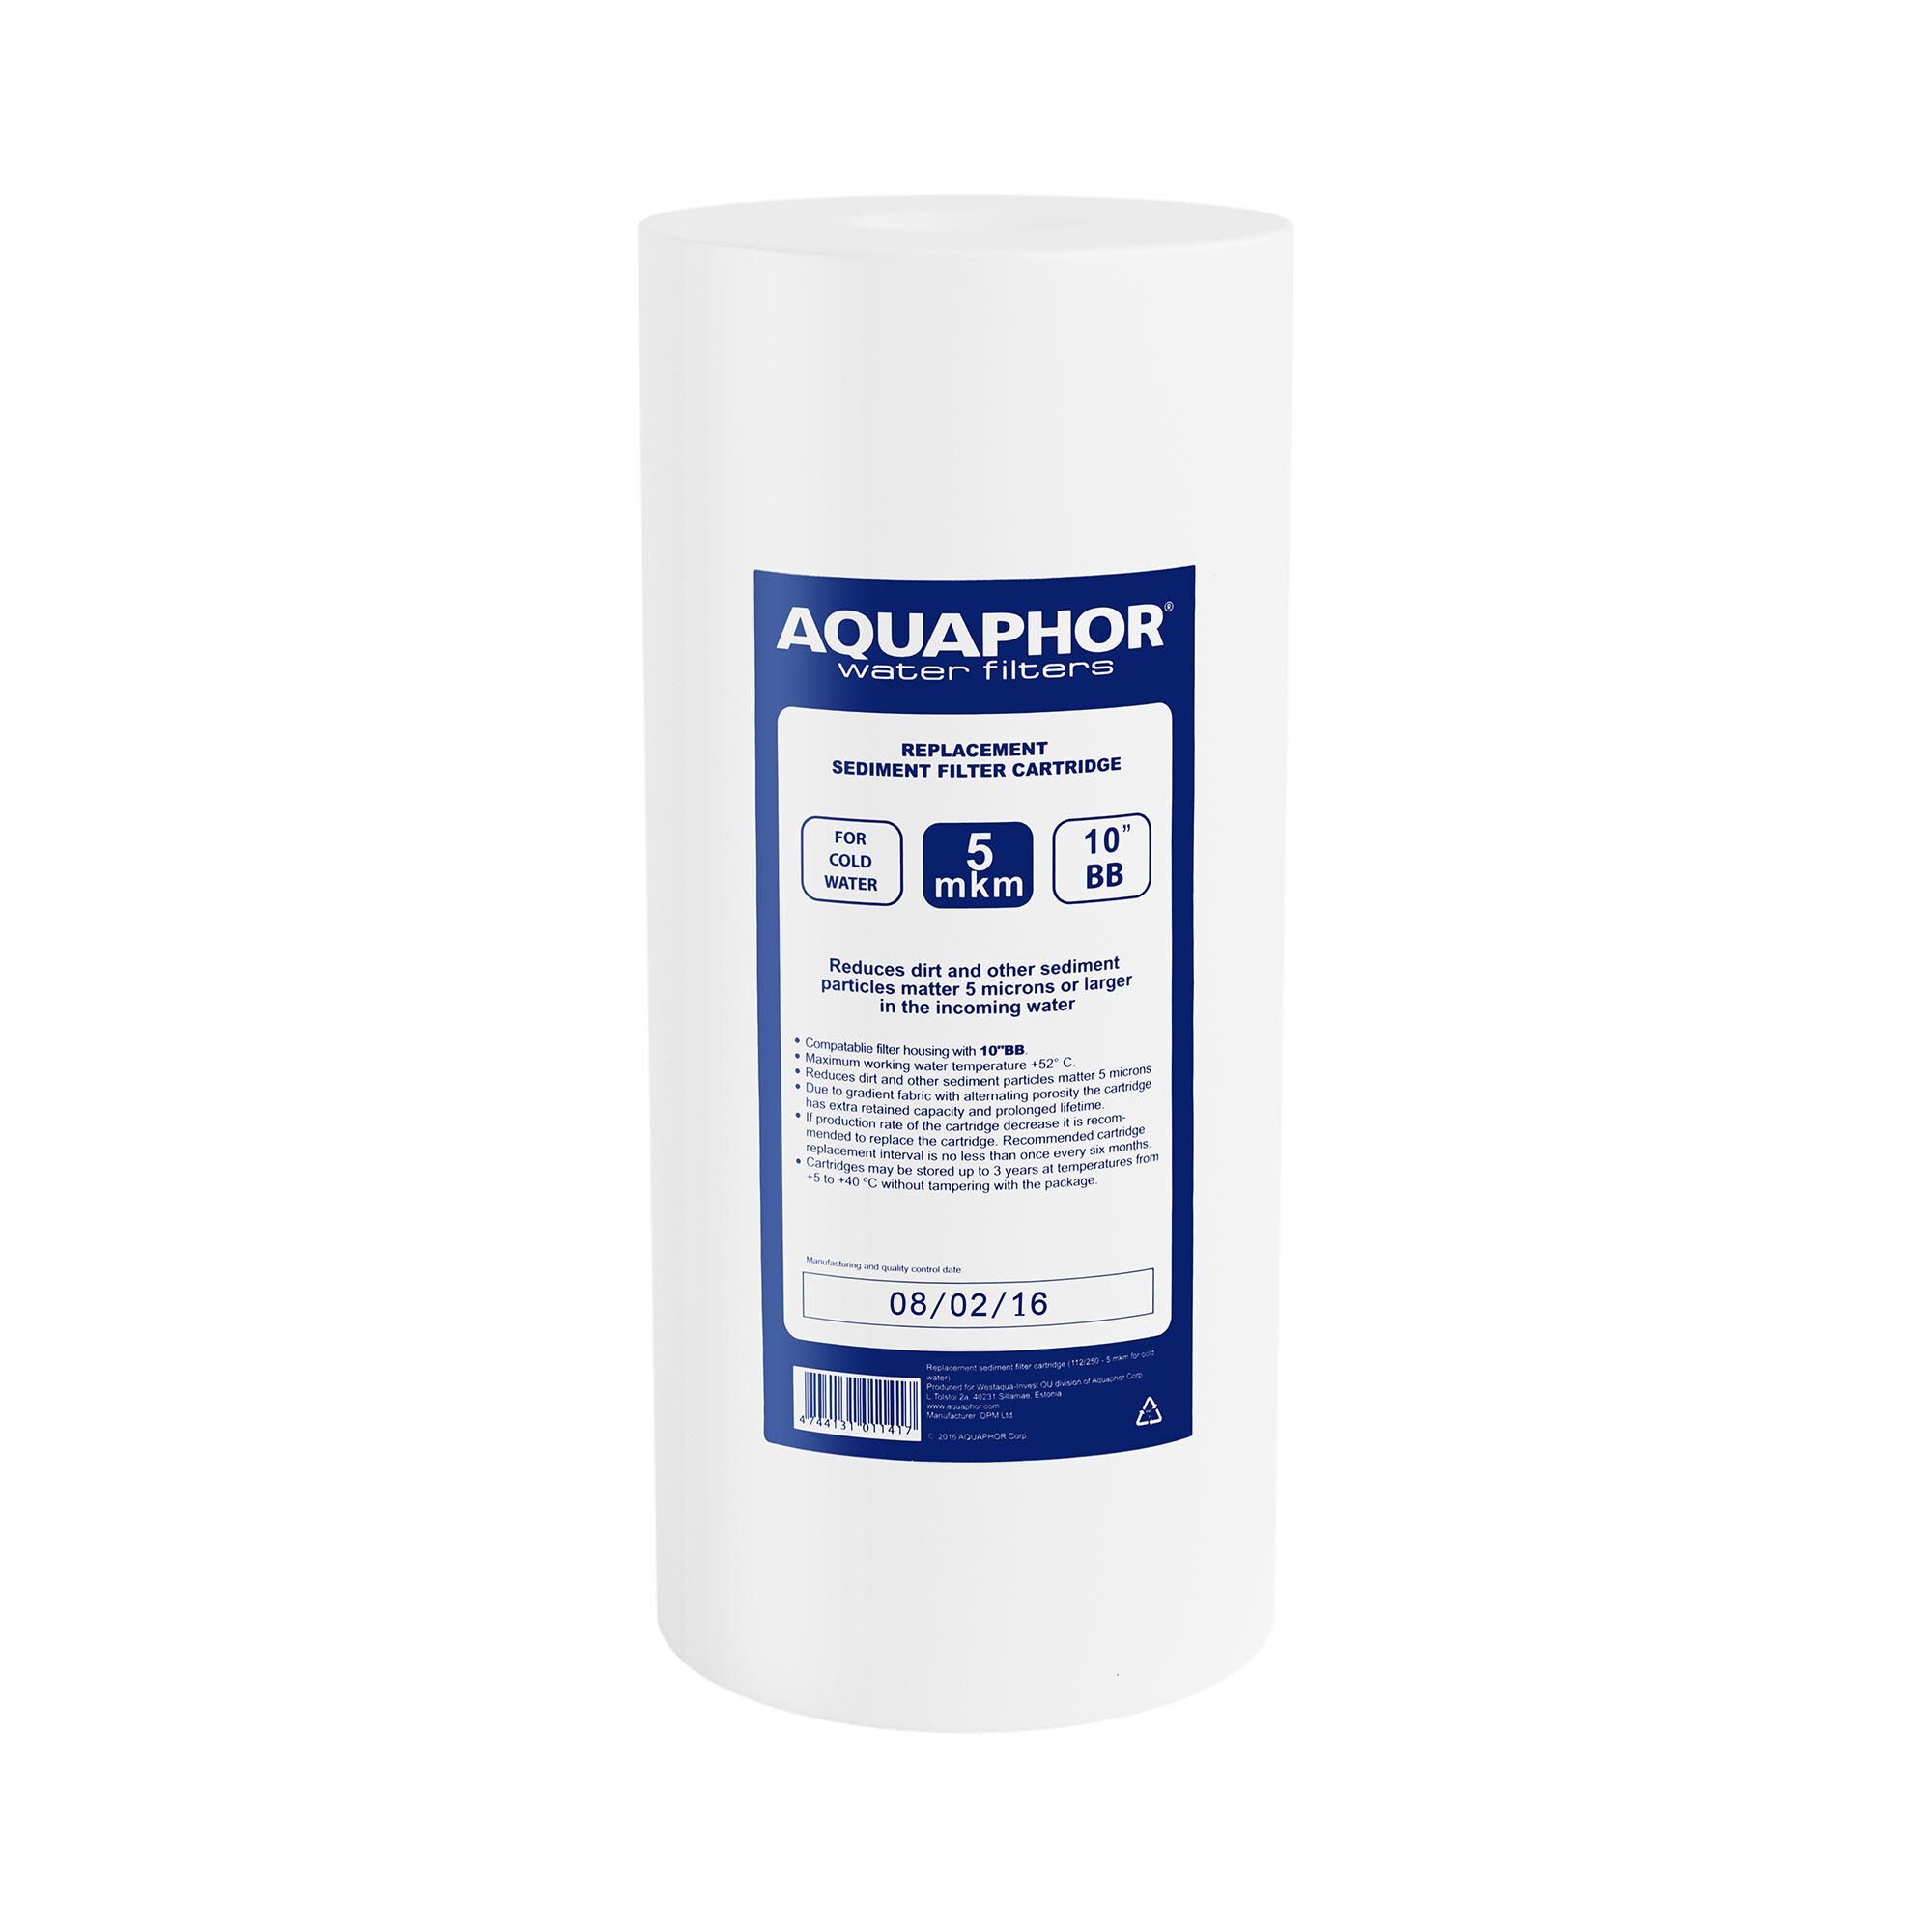 Aquaphor waterfilter met omgekeerde osmose - 10 " "10"" BB, 5 MICROM PP"